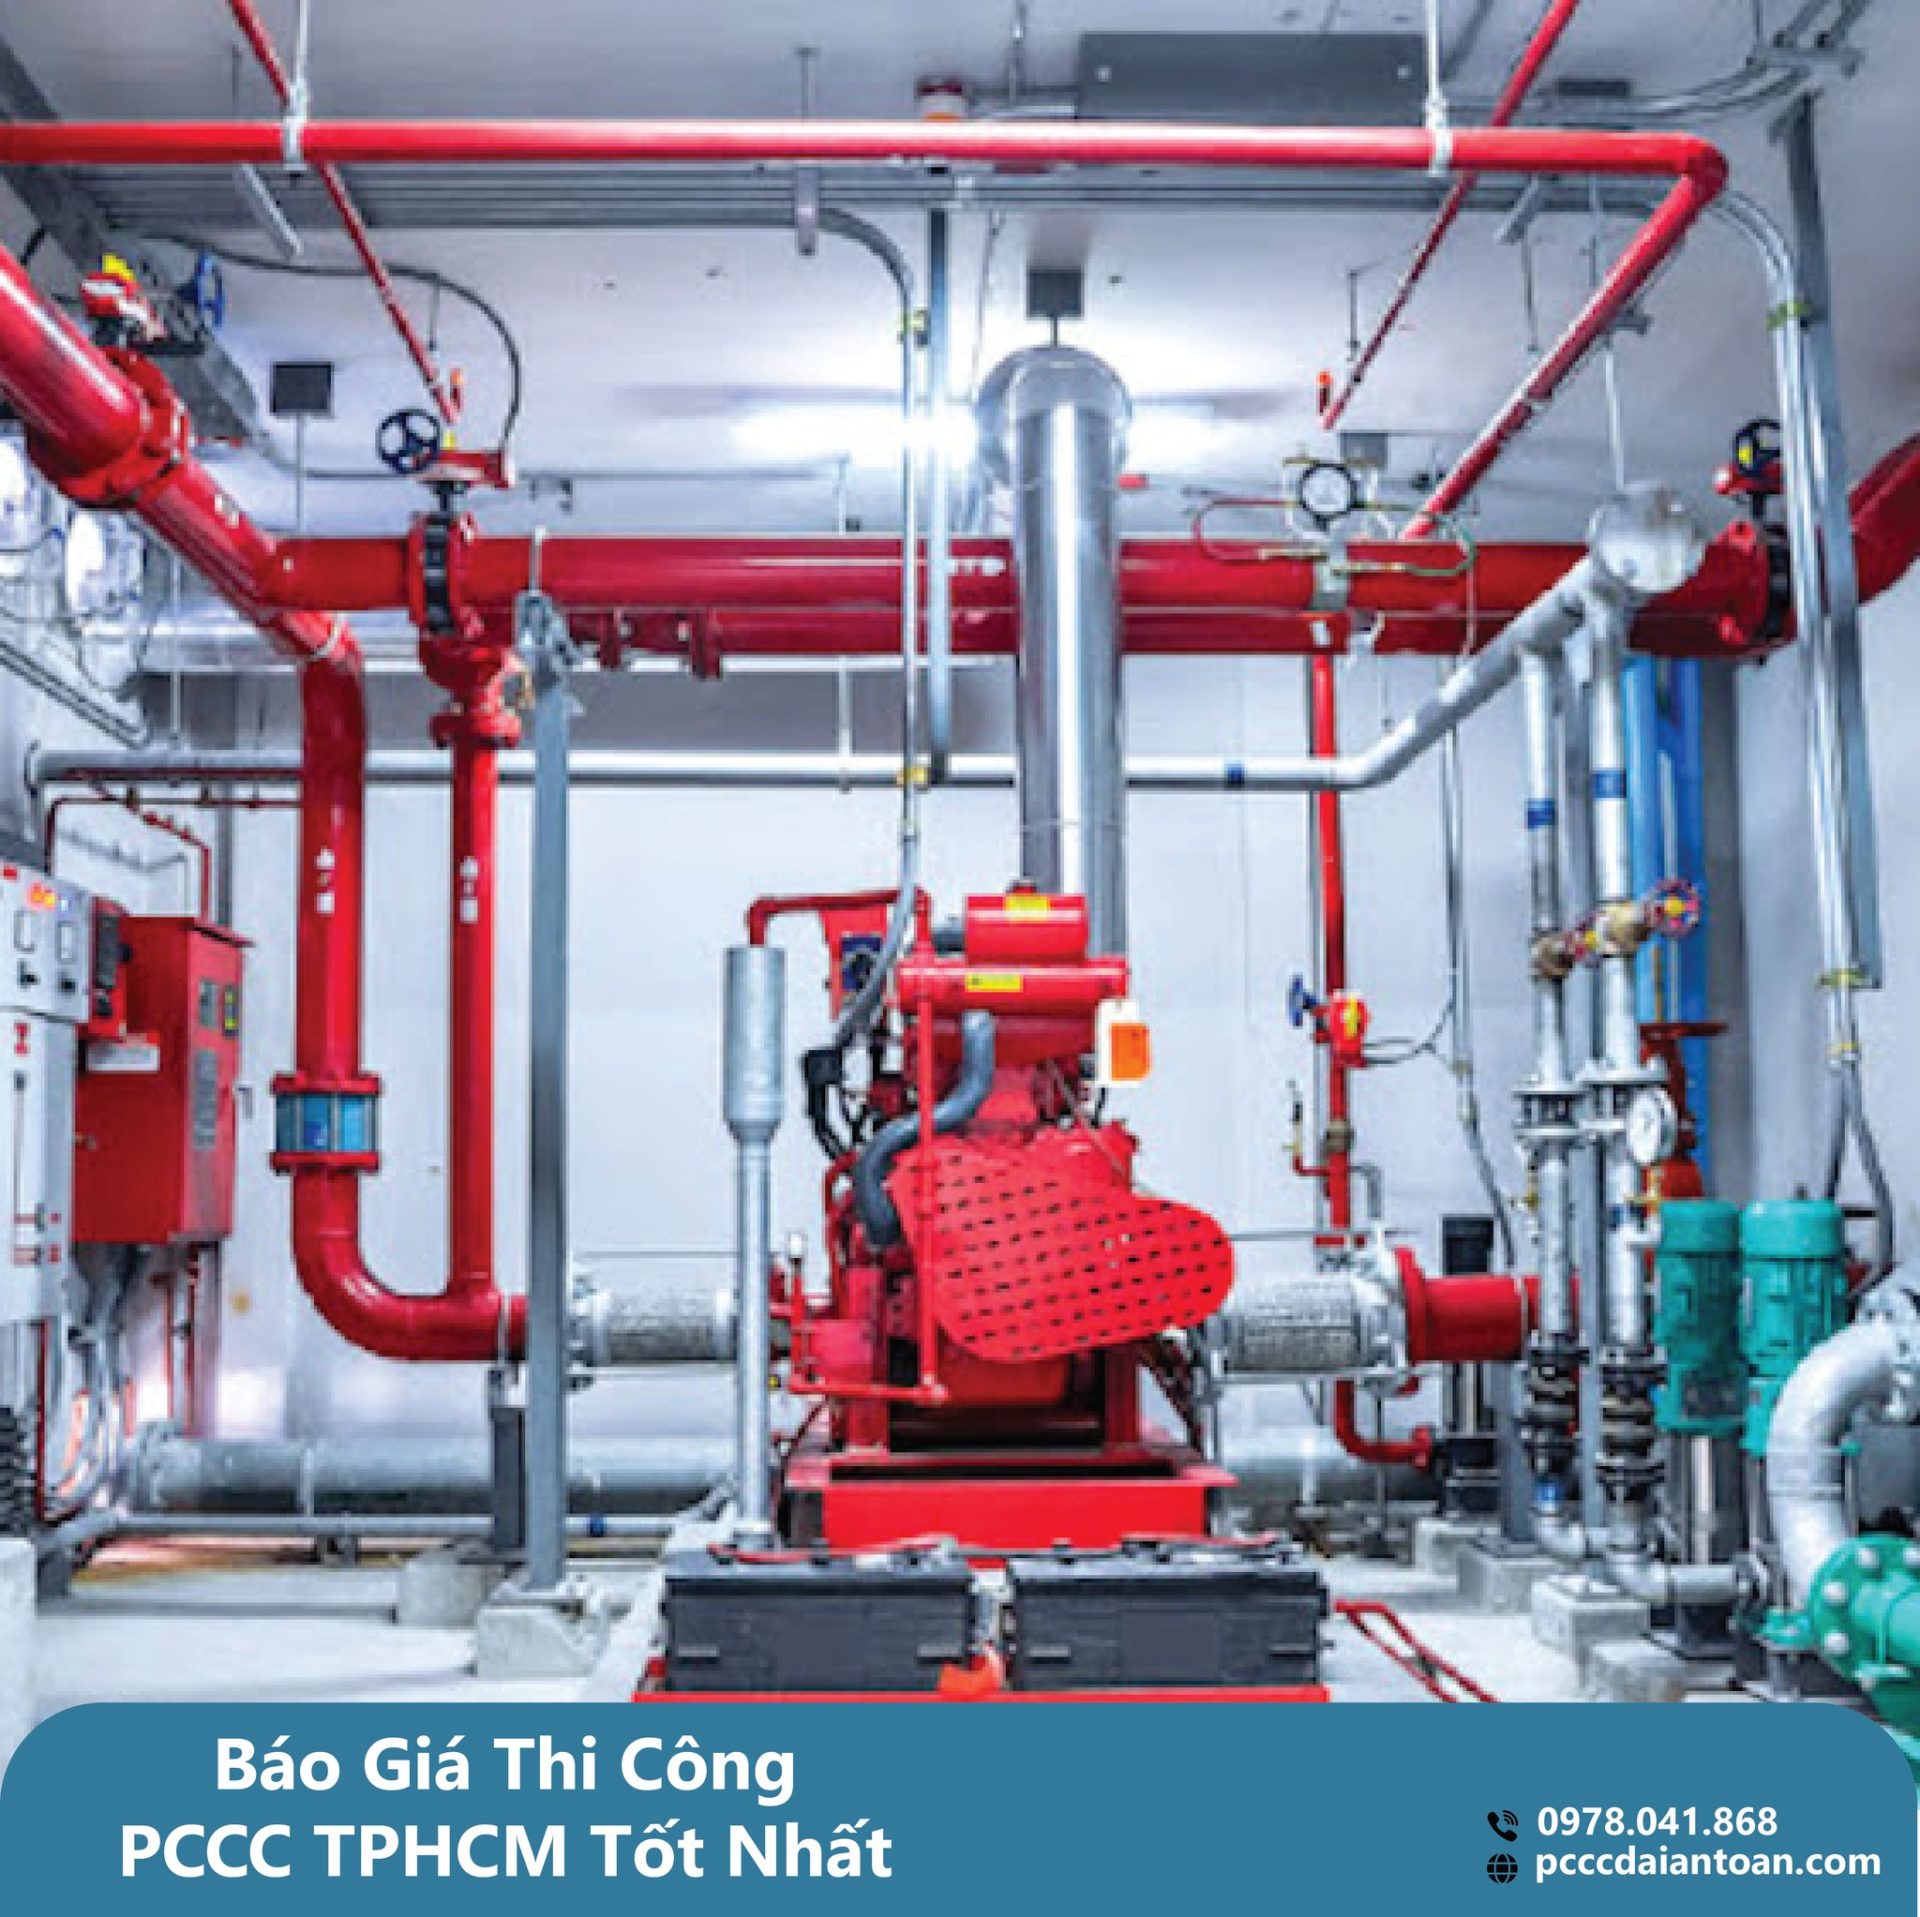 Báo Giá Thi Công PCCC TPHCM Tốt Nhất - Hồ Sơ Kiểm Định Nhanh Chóng